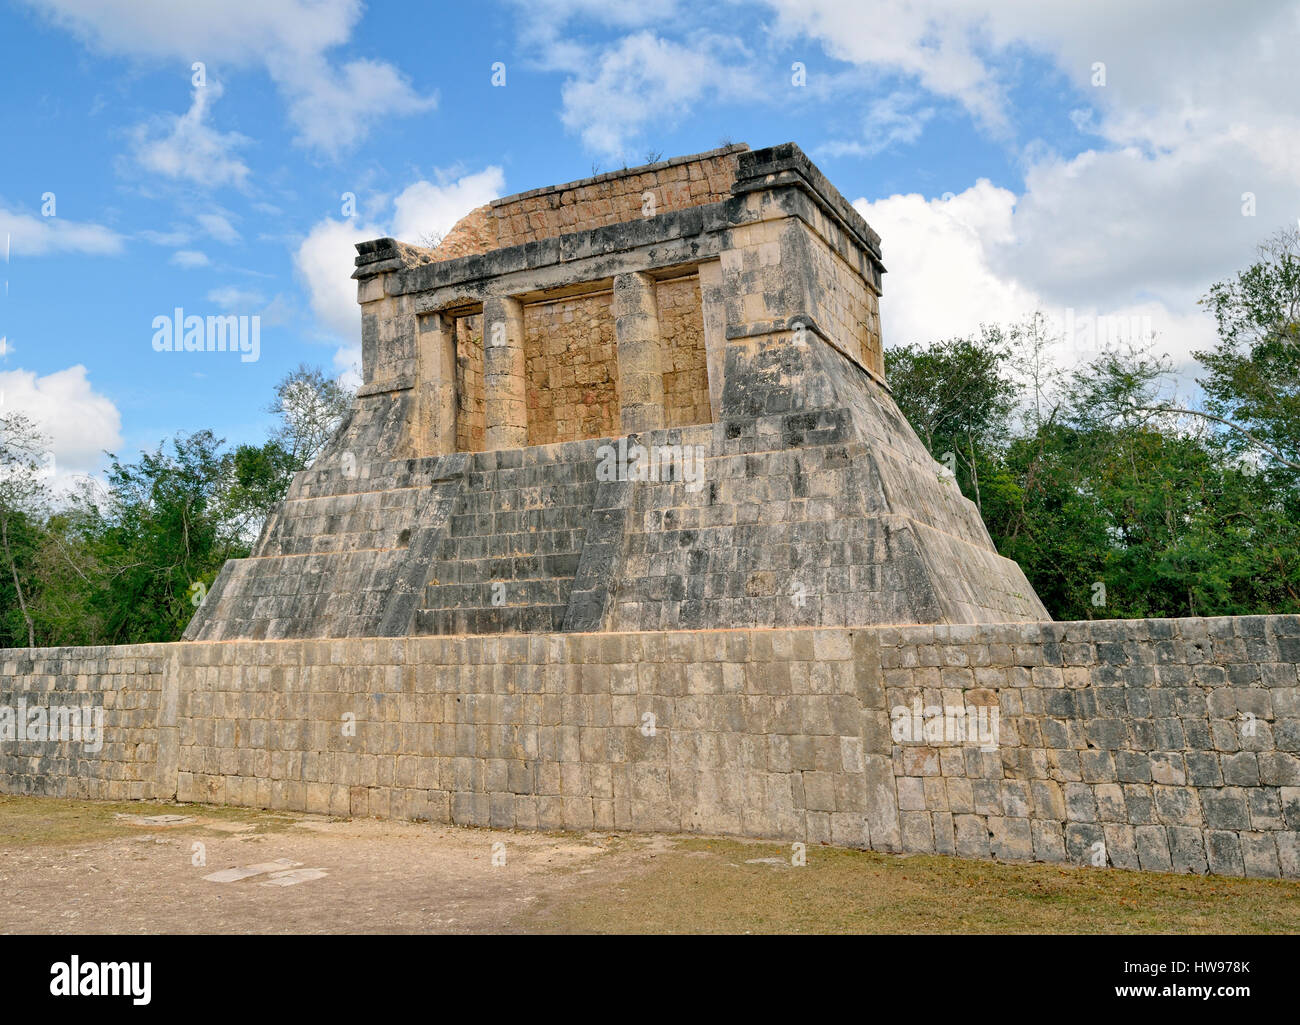 Templo del Hombre Barbado, Temple of the Bearded Man, historic Mayan city of Chichen Itza, Piste, Yucatan, Mexico Stock Photo